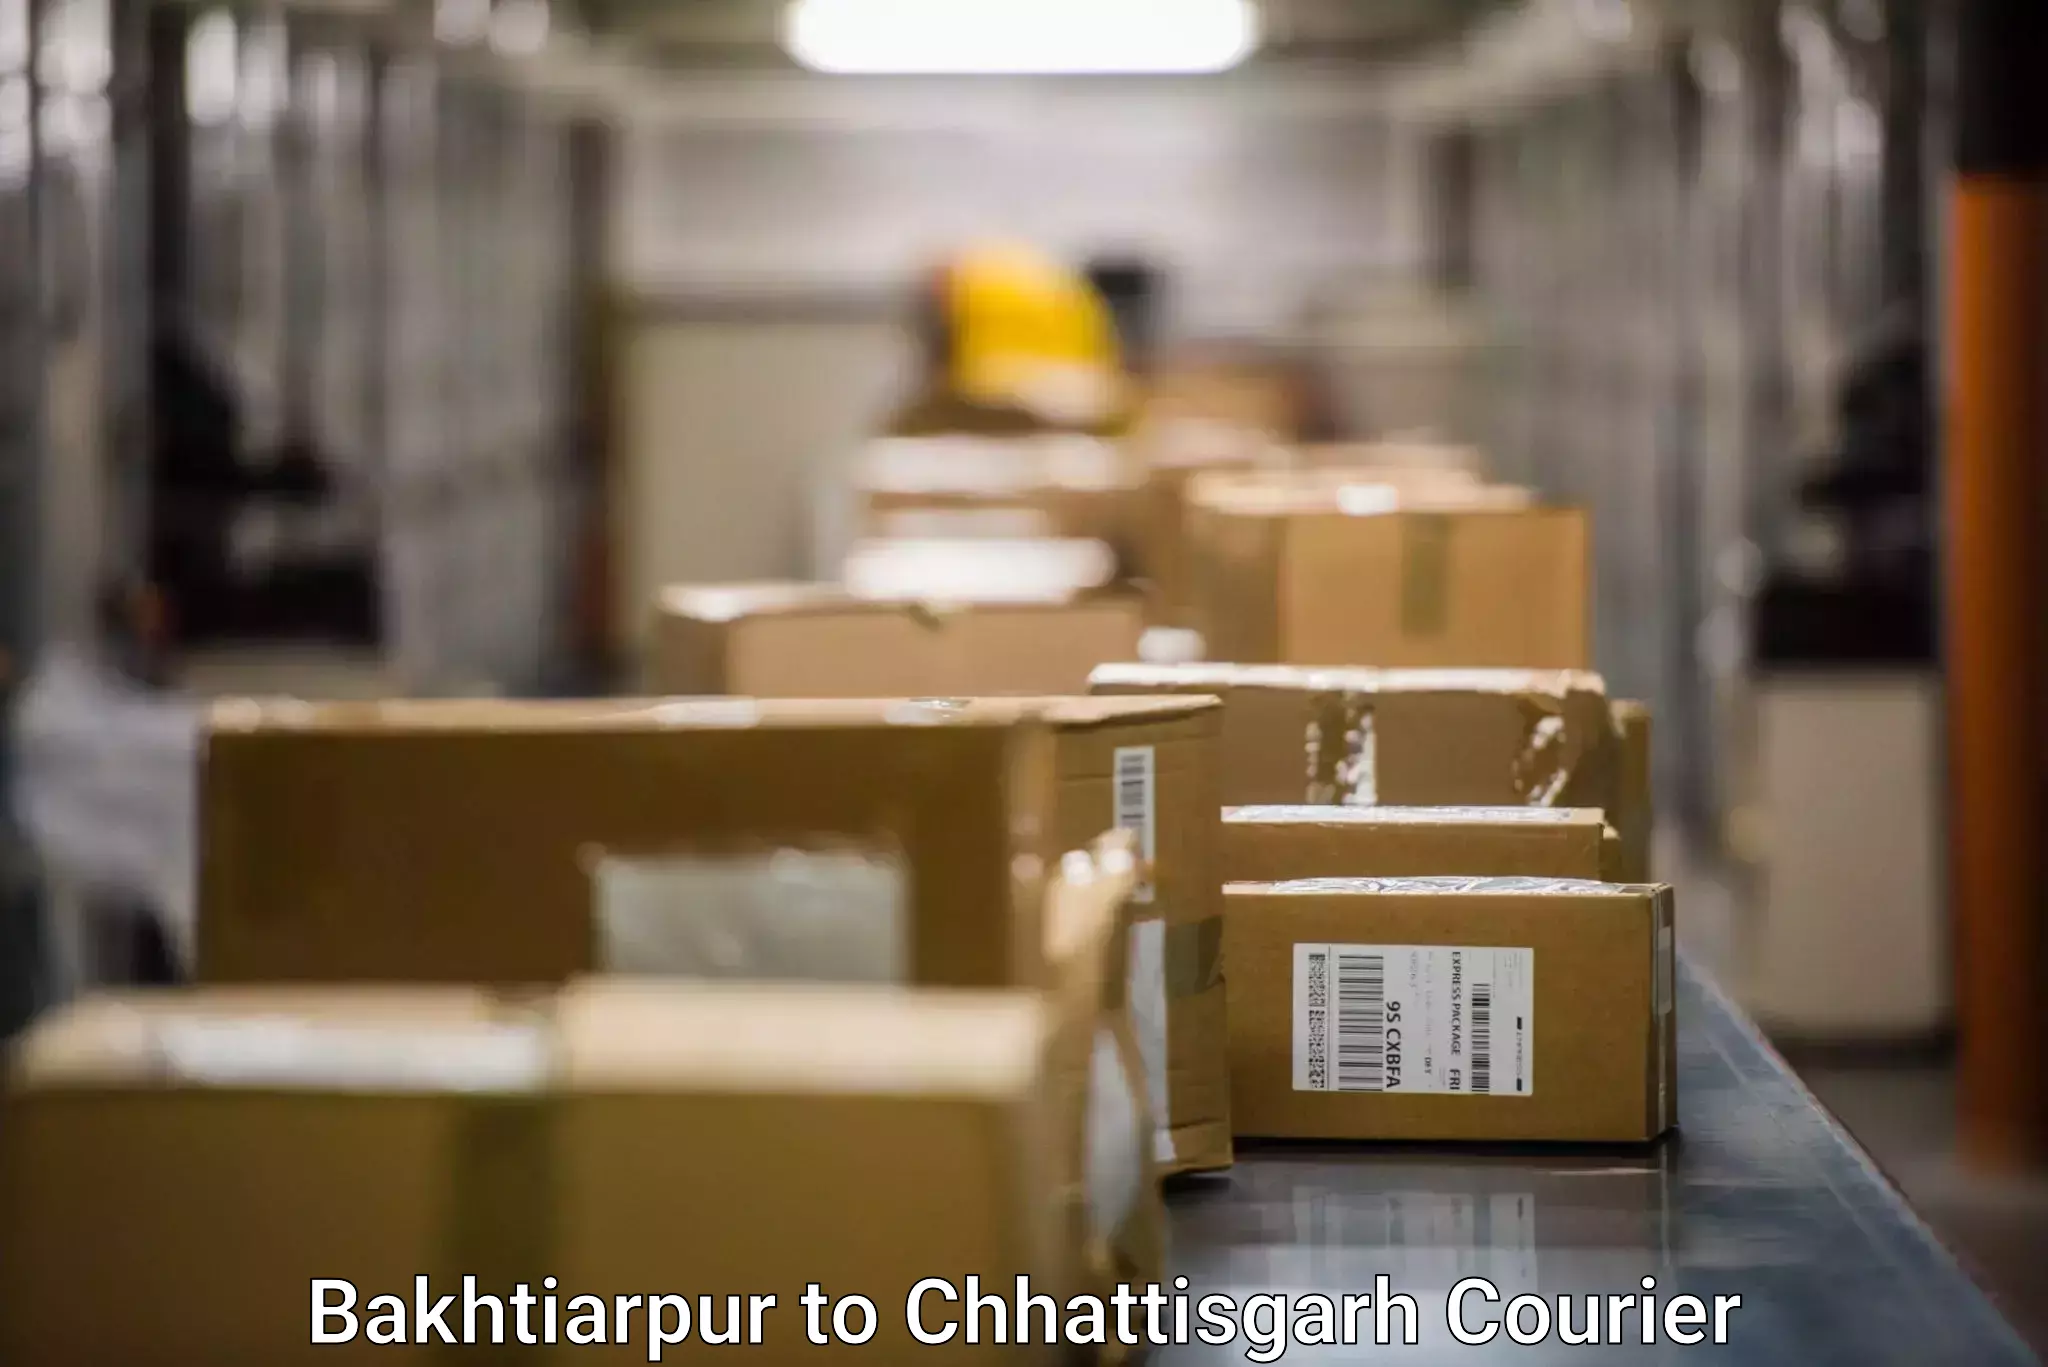 Bulk courier orders Bakhtiarpur to Korea Chhattisgarh